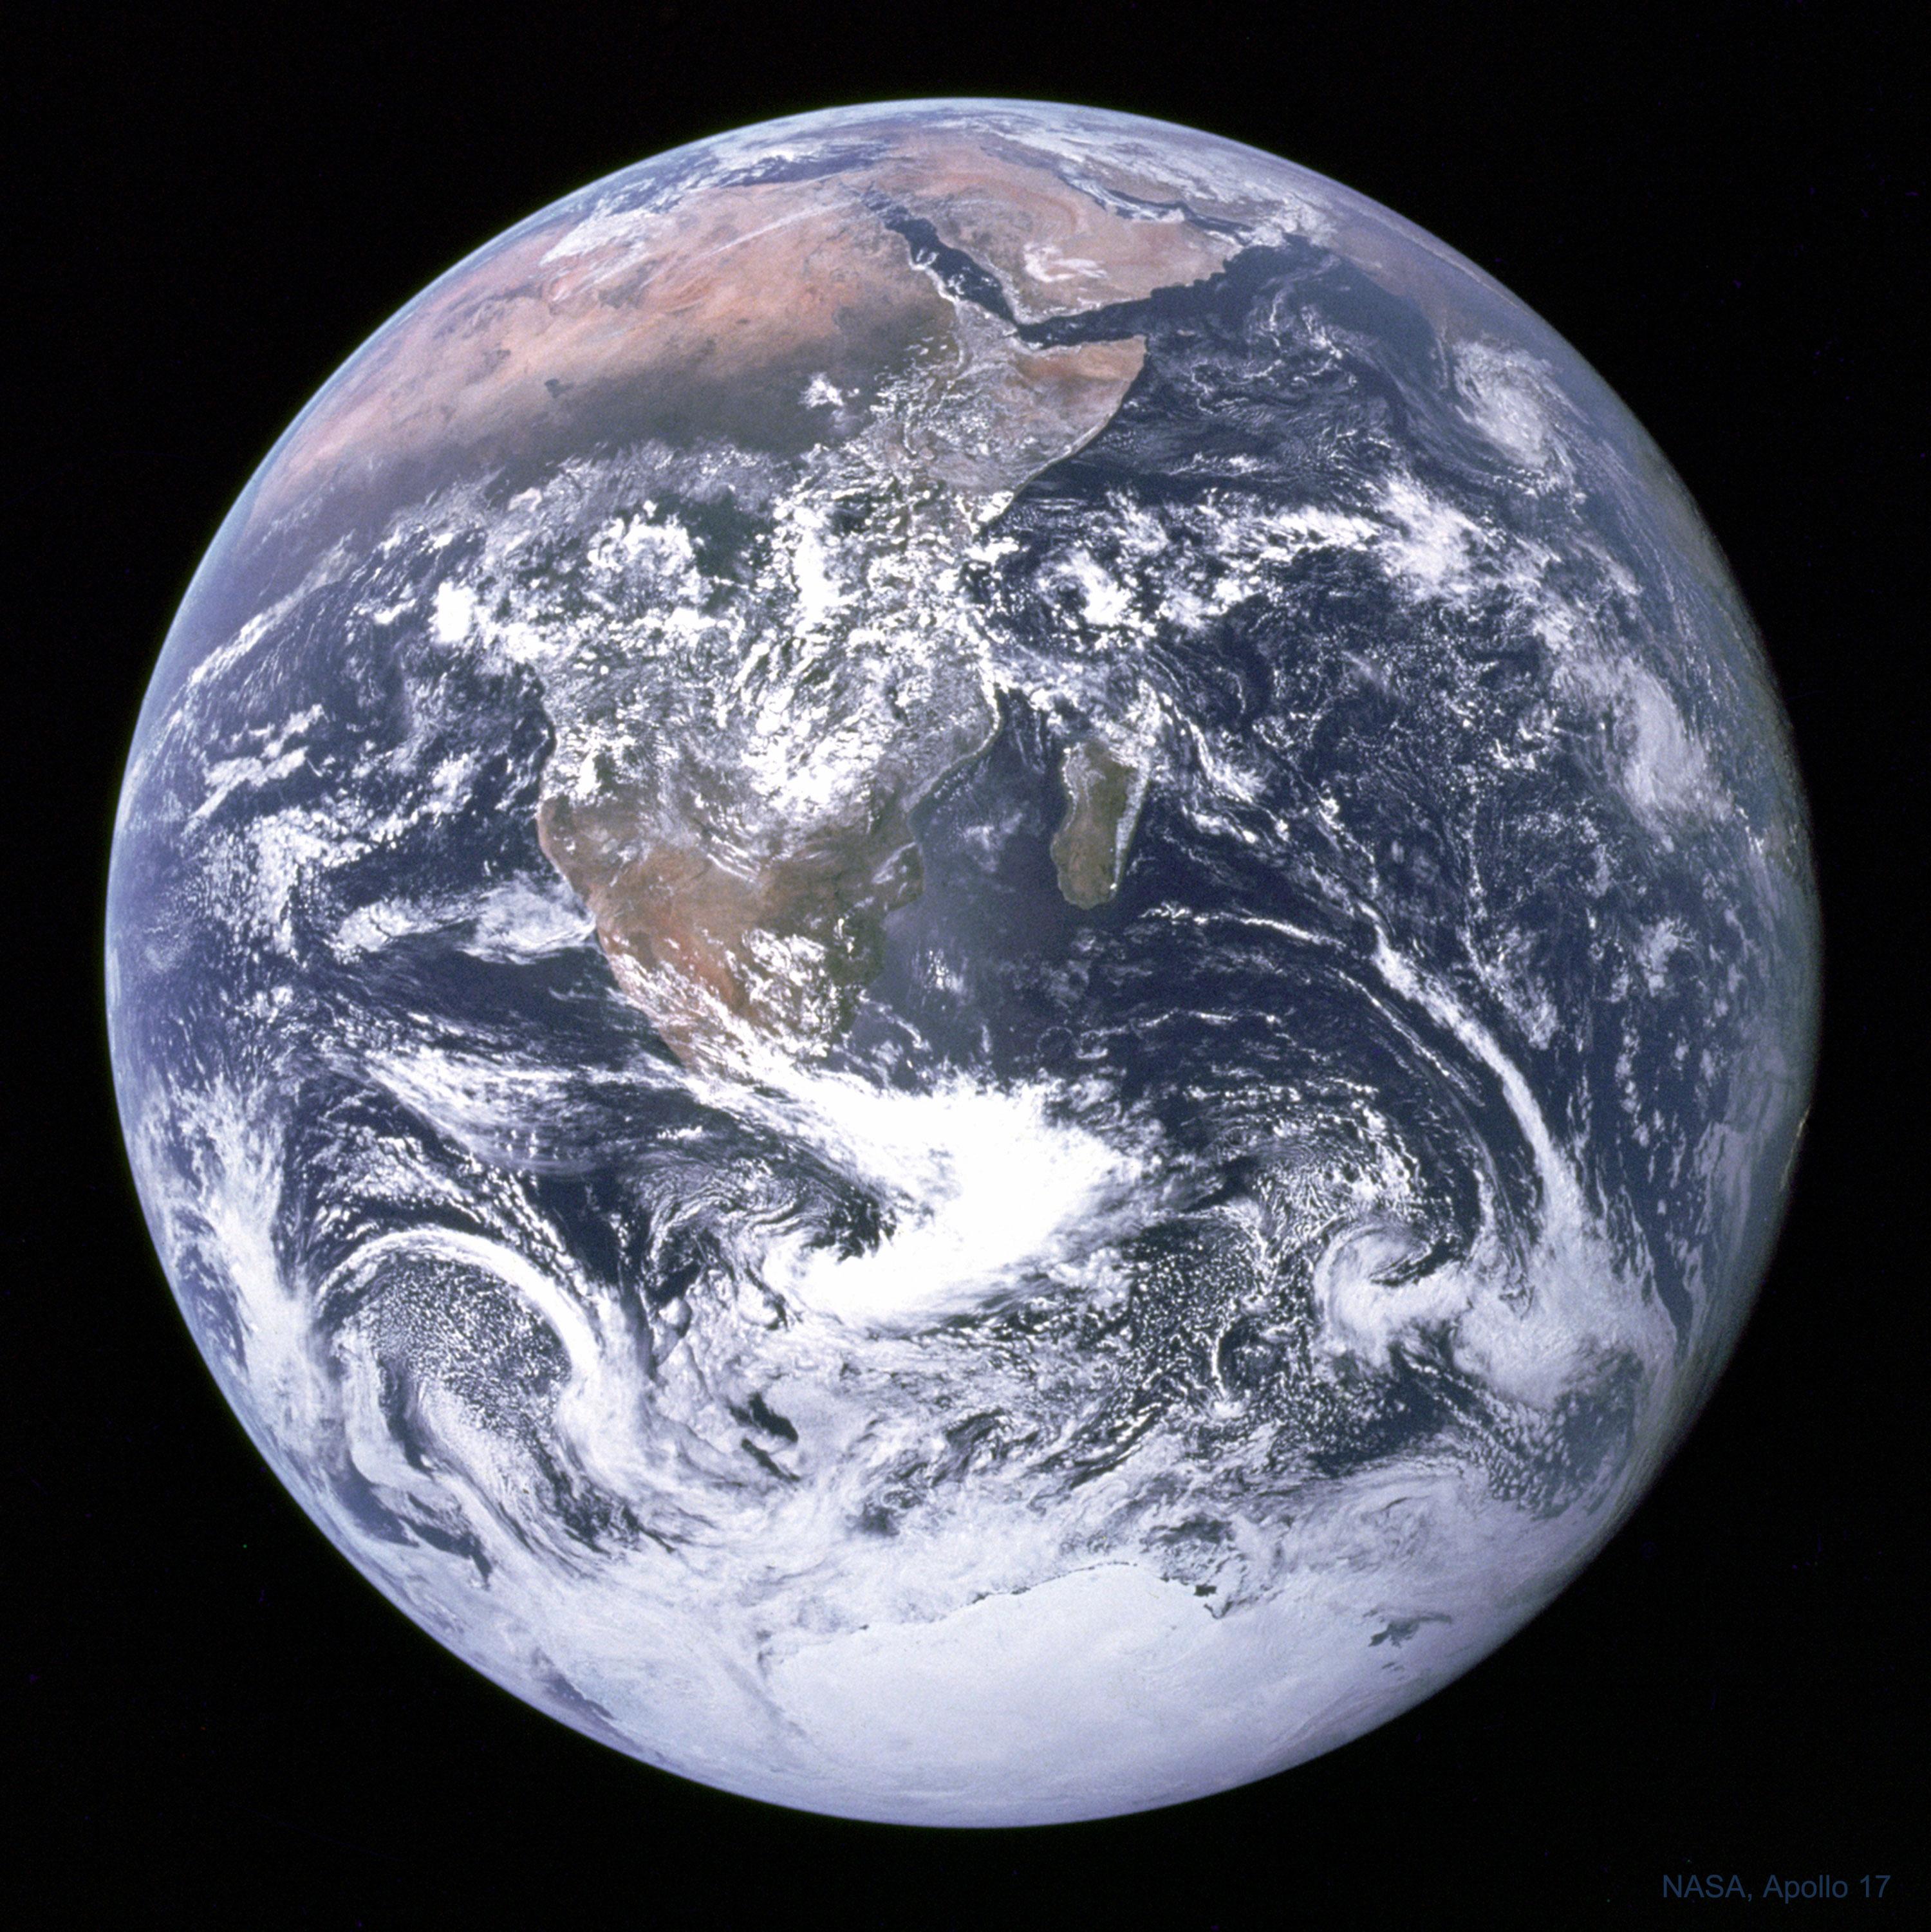 الكرة الأرضيّة مأخوذة من زاوية فضائيّة جنوبيّة يظهر منها افريقيا والقارة القطبيّة الجنوبيّة إضافة إلى محيطات شاسعة وغيوم مترامية